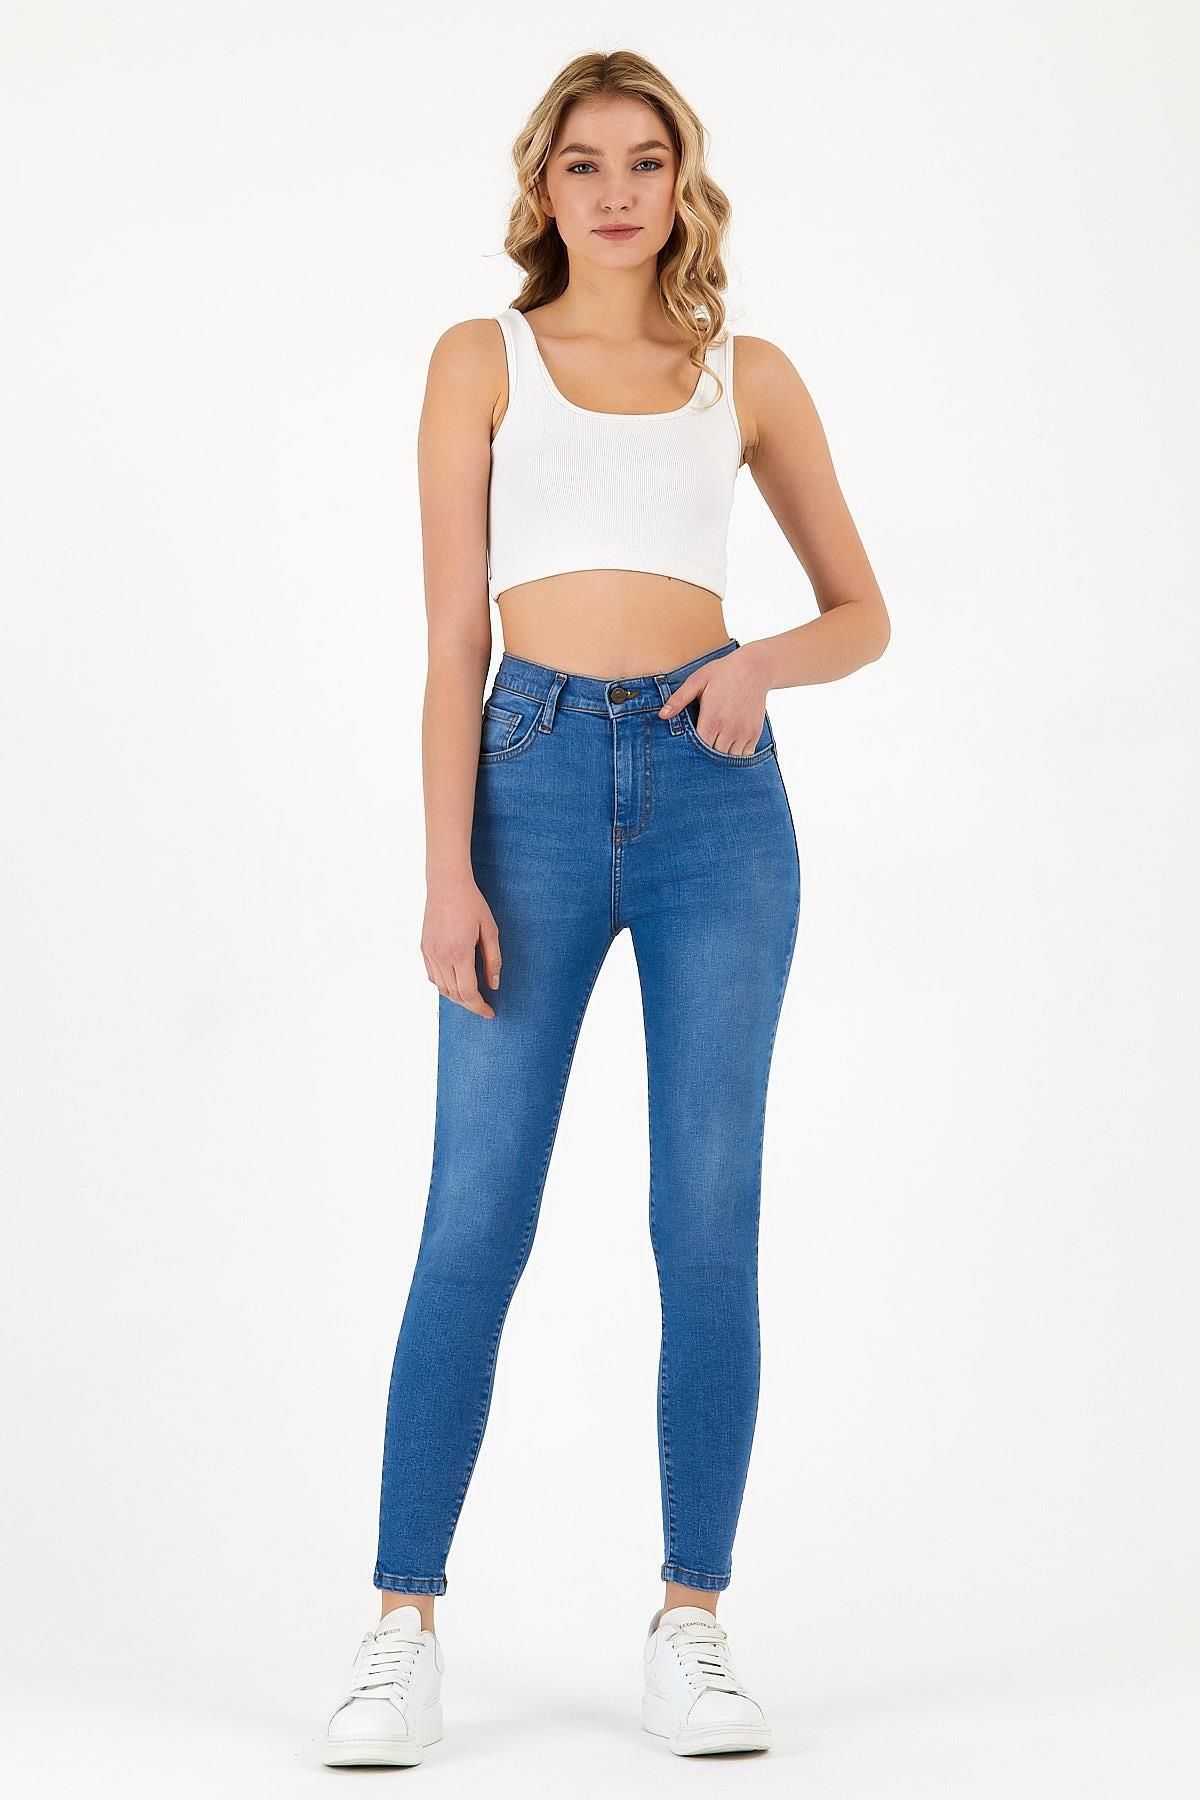 EXPLODE - Kadın Açık Mavi Yüksek Bel Skinny Jeans Açık Mavi